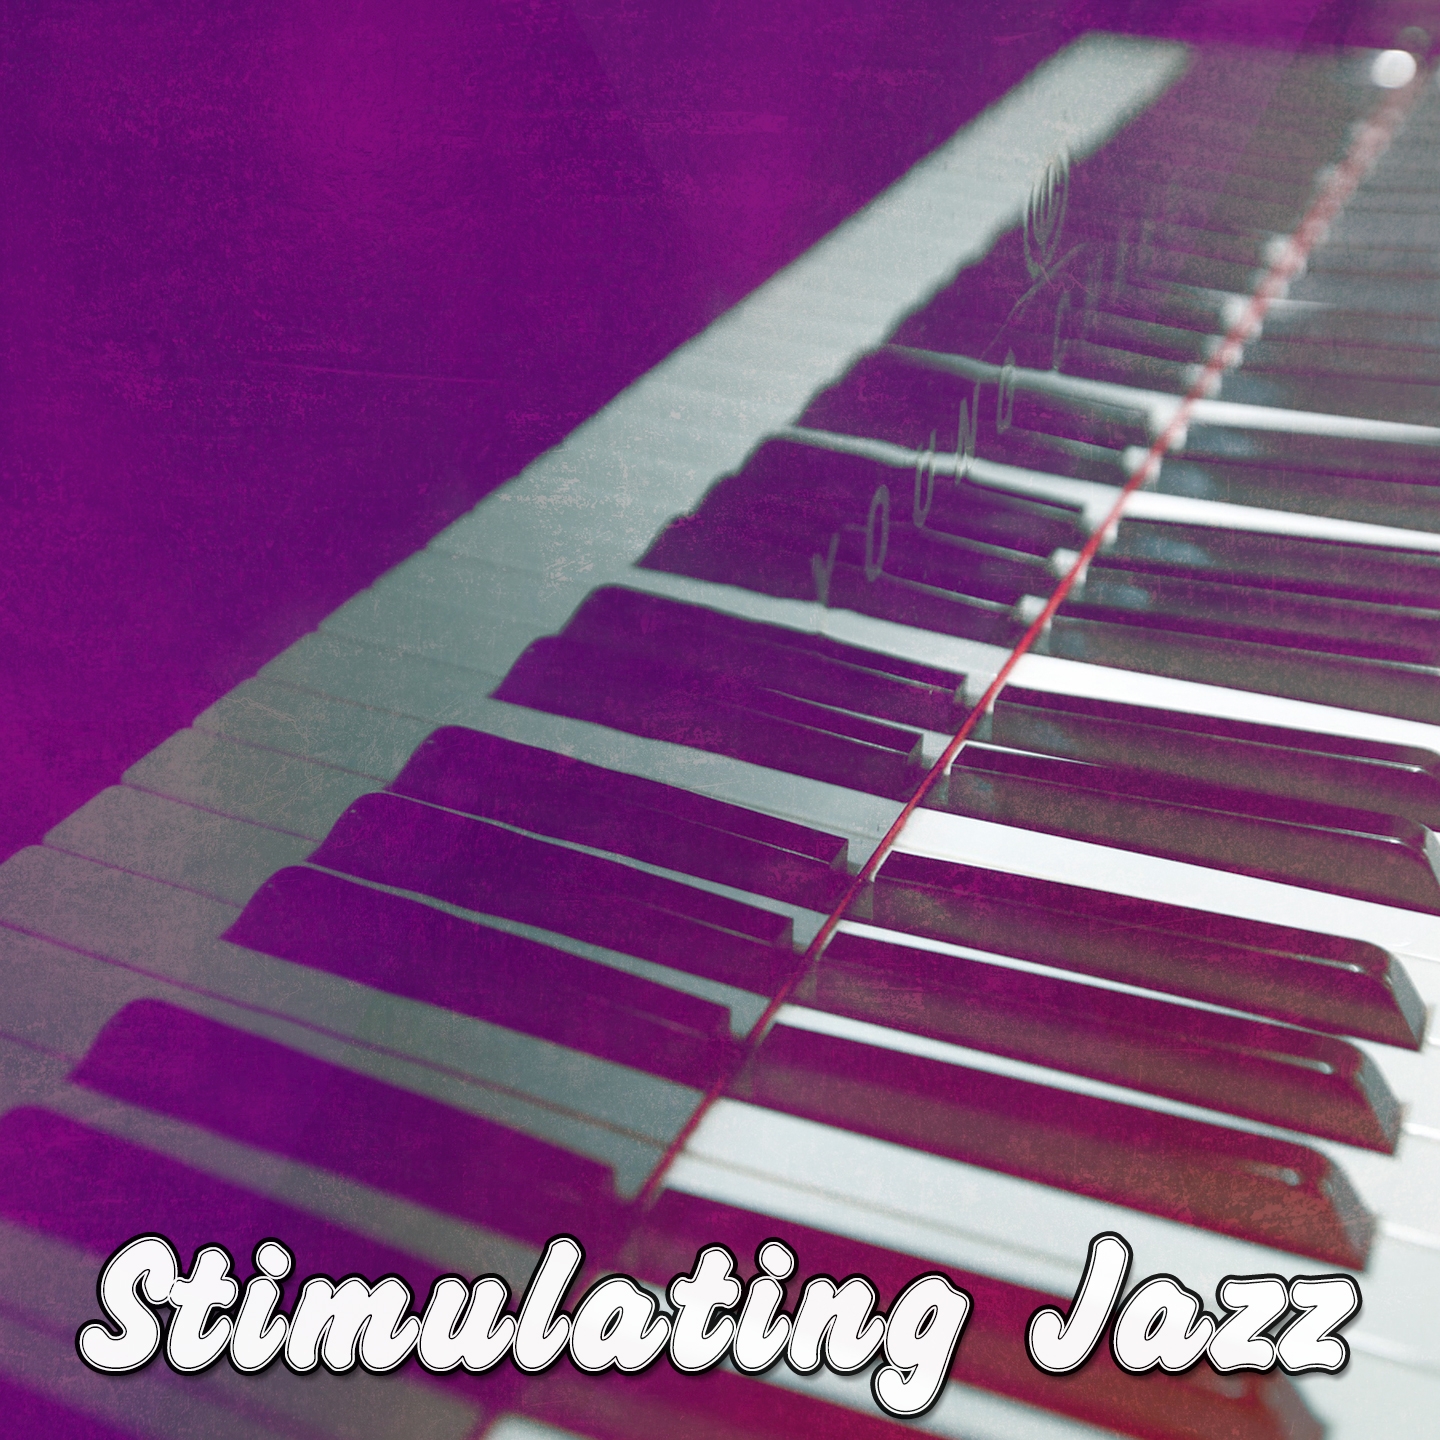 Stimulating Jazz